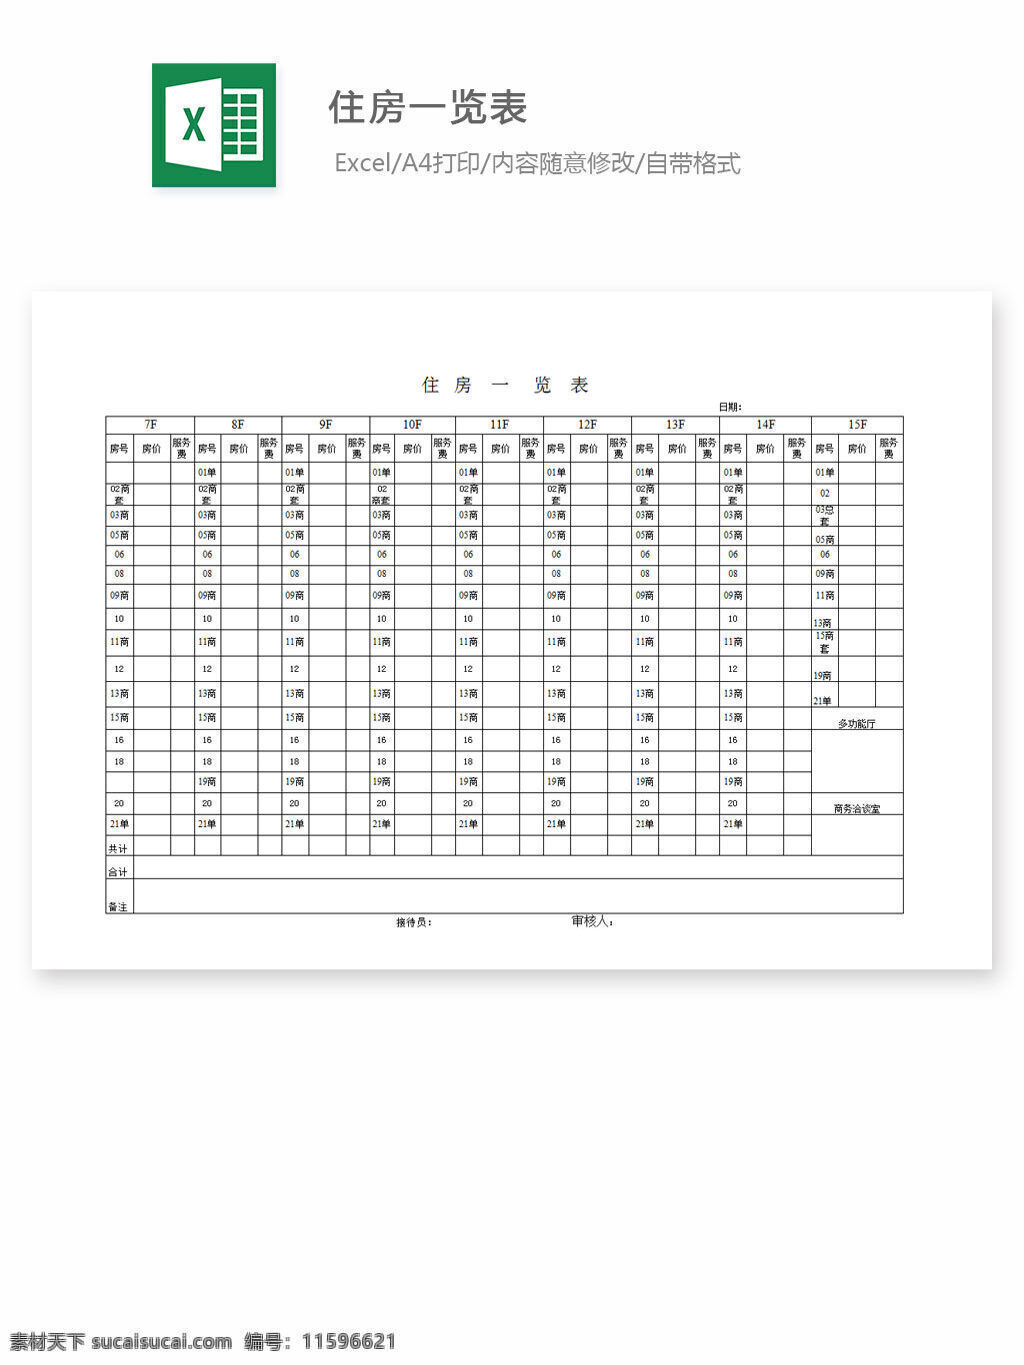 住房一览表 excel 表格 表格模板 表格设计 图表 考核指标表